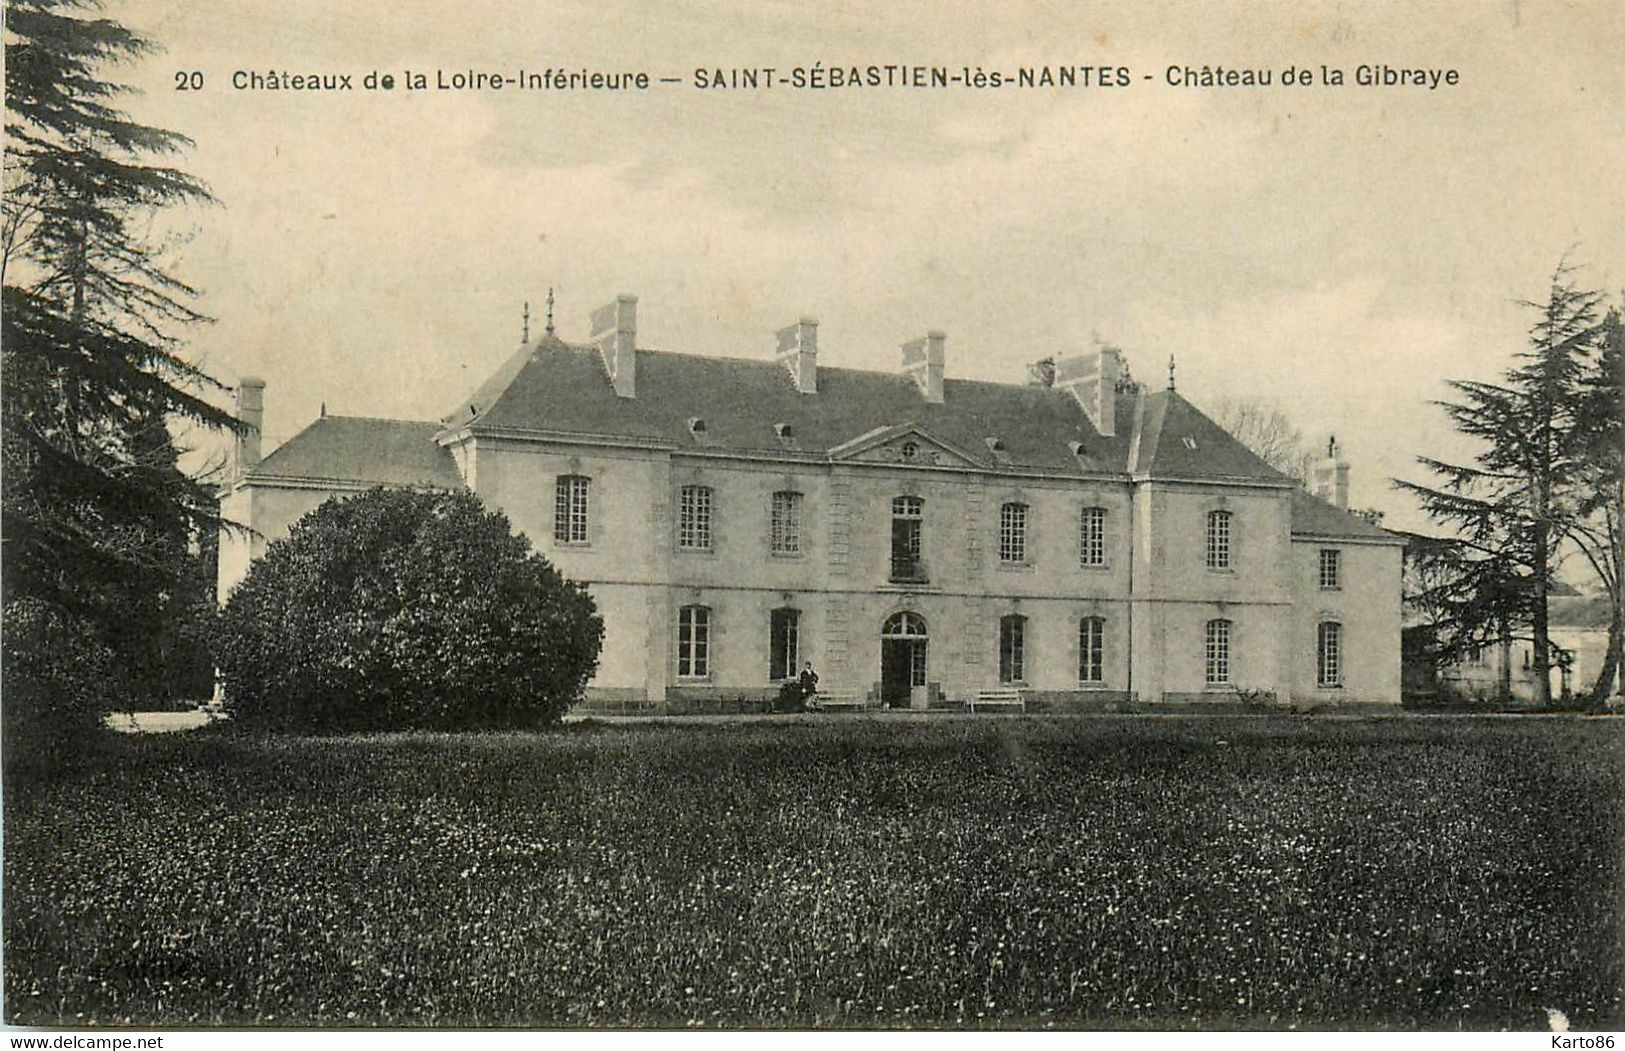 St Sébastien Sur Loire * Château De La Gibraye * Châteaux De La Loire Inférieure N°20 - Saint-Sébastien-sur-Loire